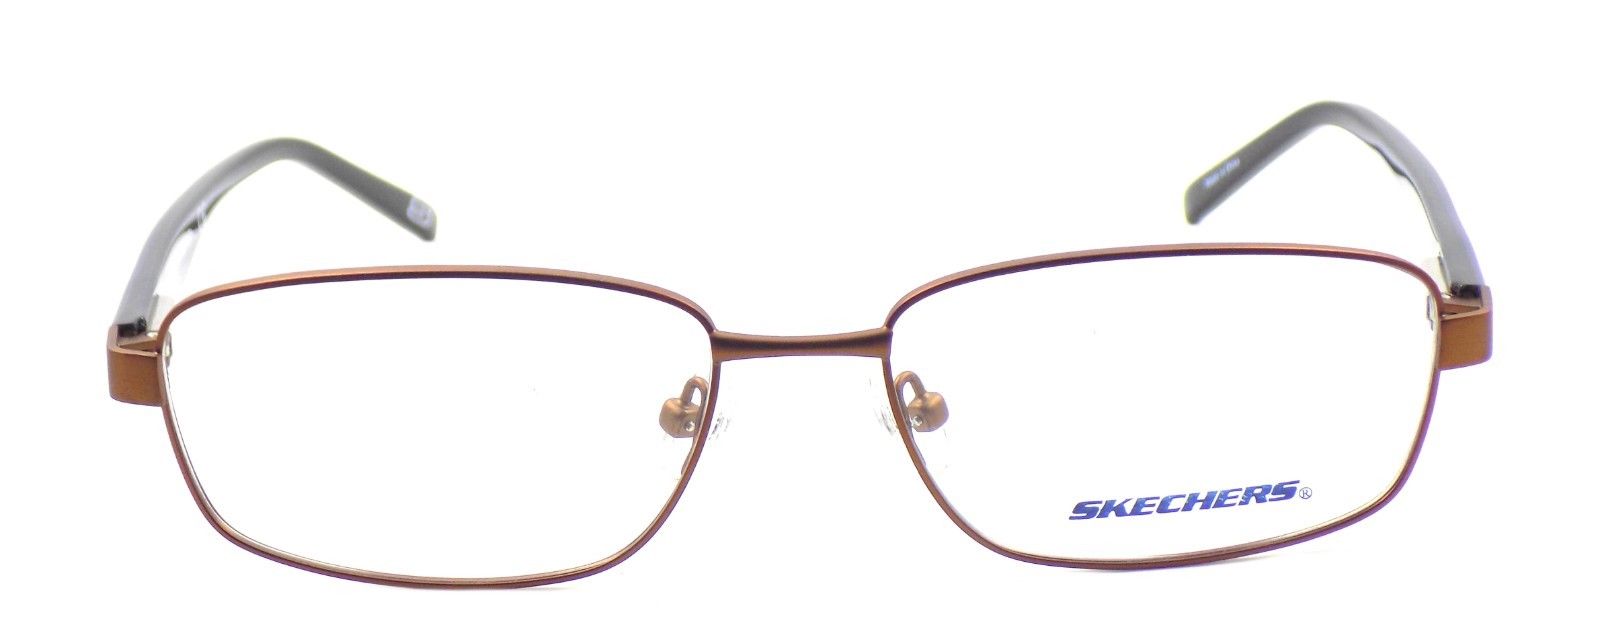 2-SKECHERS SE 3173 049 Men's Eyeglasses Frames 54-16-140 Matte Brown + CASE-664689739820-IKSpecs